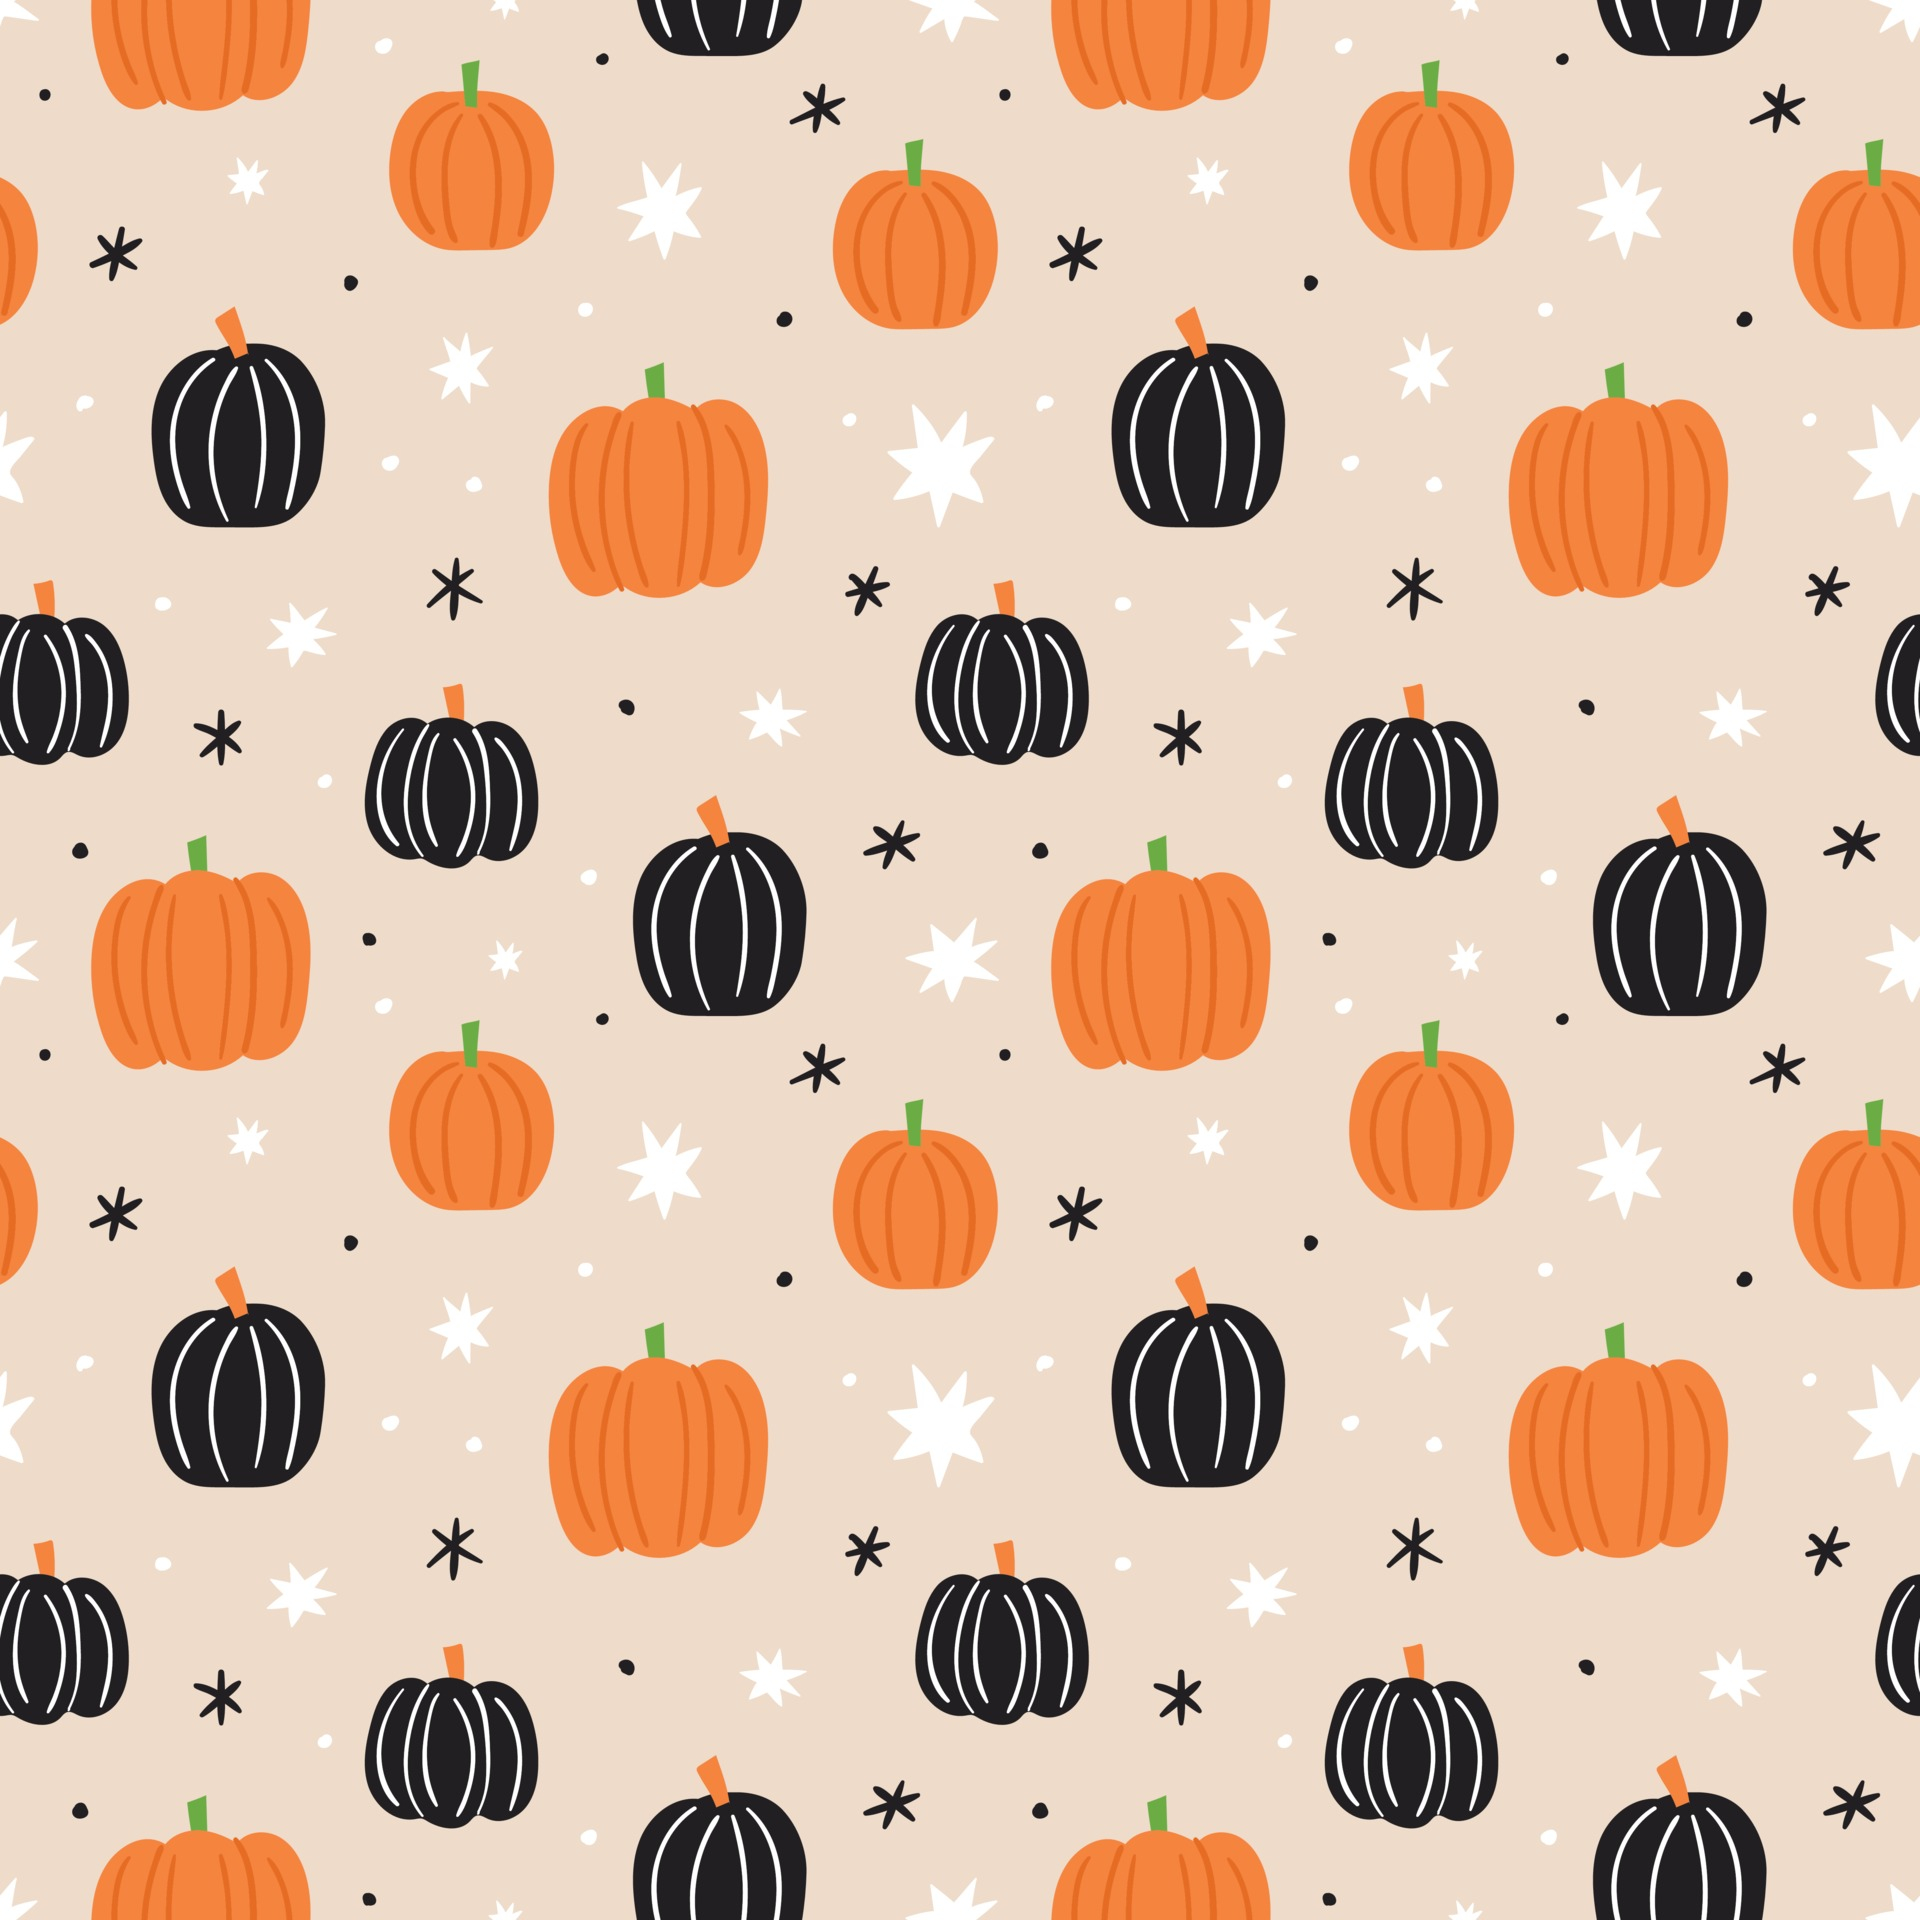 1920x1920 Pumpkin seamless pattern. Pumpkin background. Halloween pattern 3445432 Vector Art